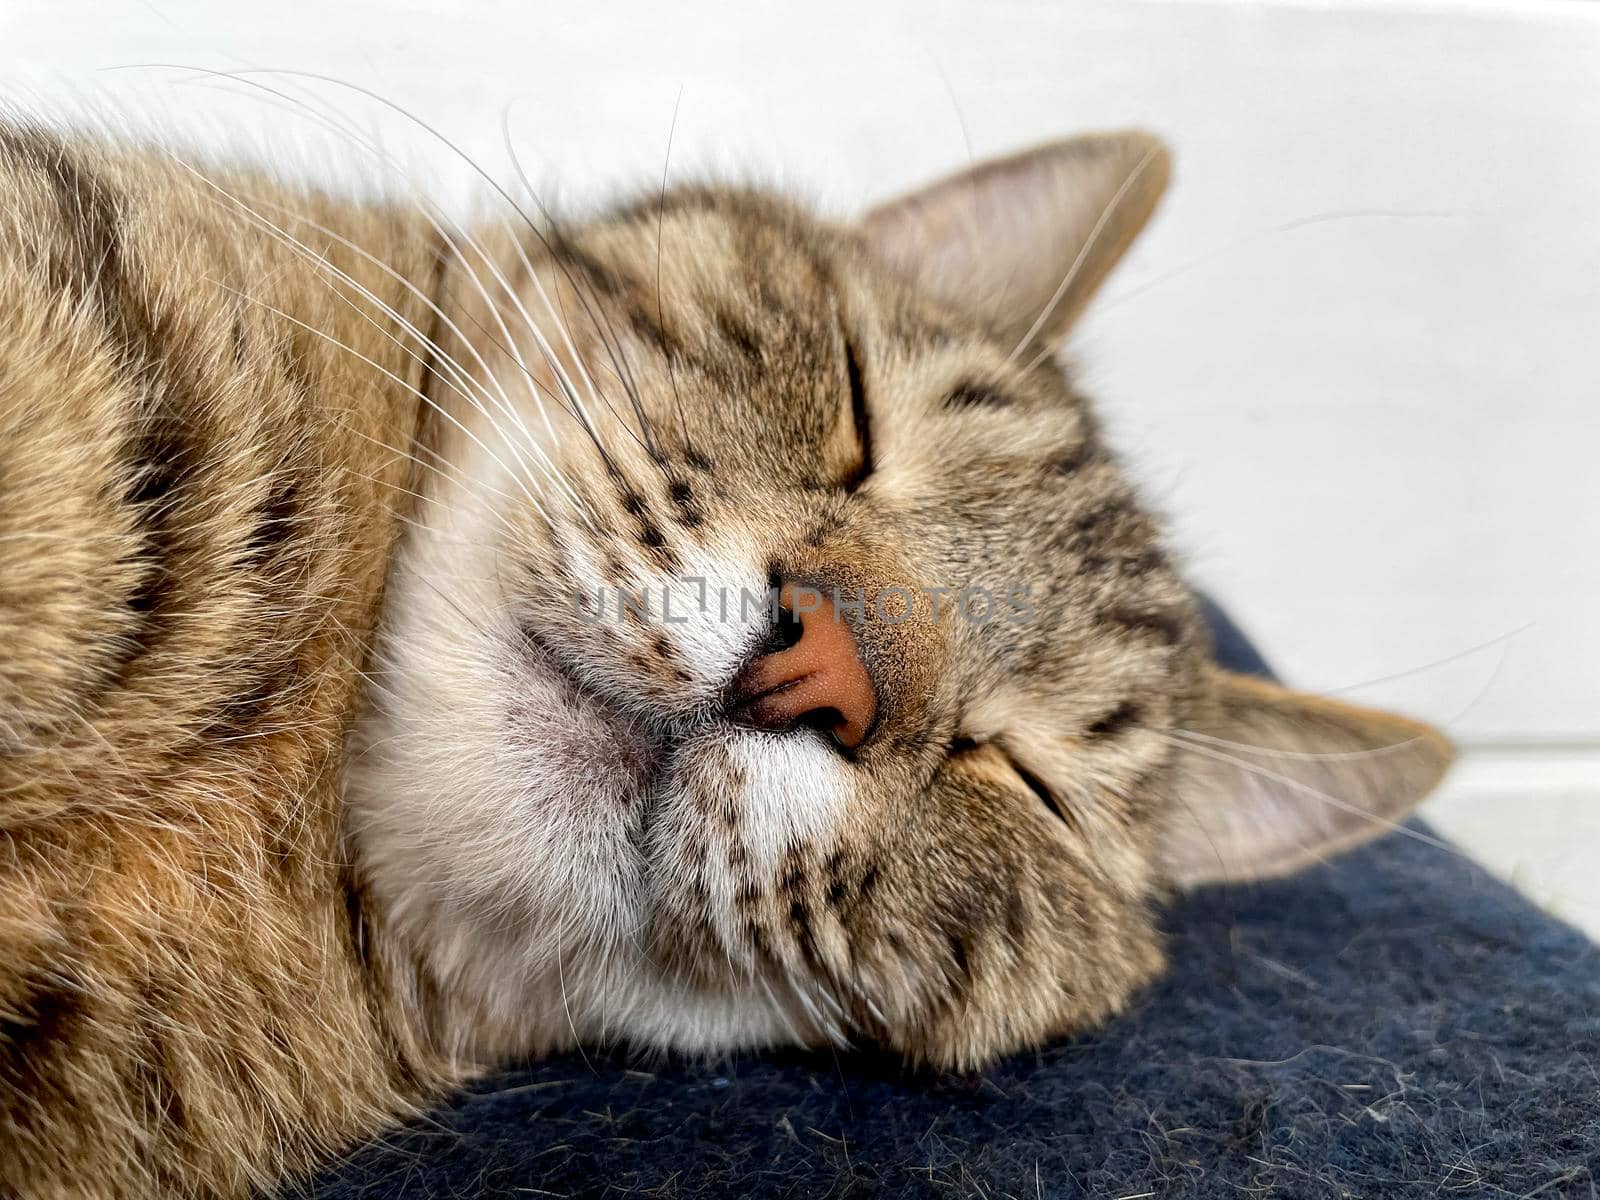 Sleeping gray cat on a blue woolen blanket by BEMPhoto